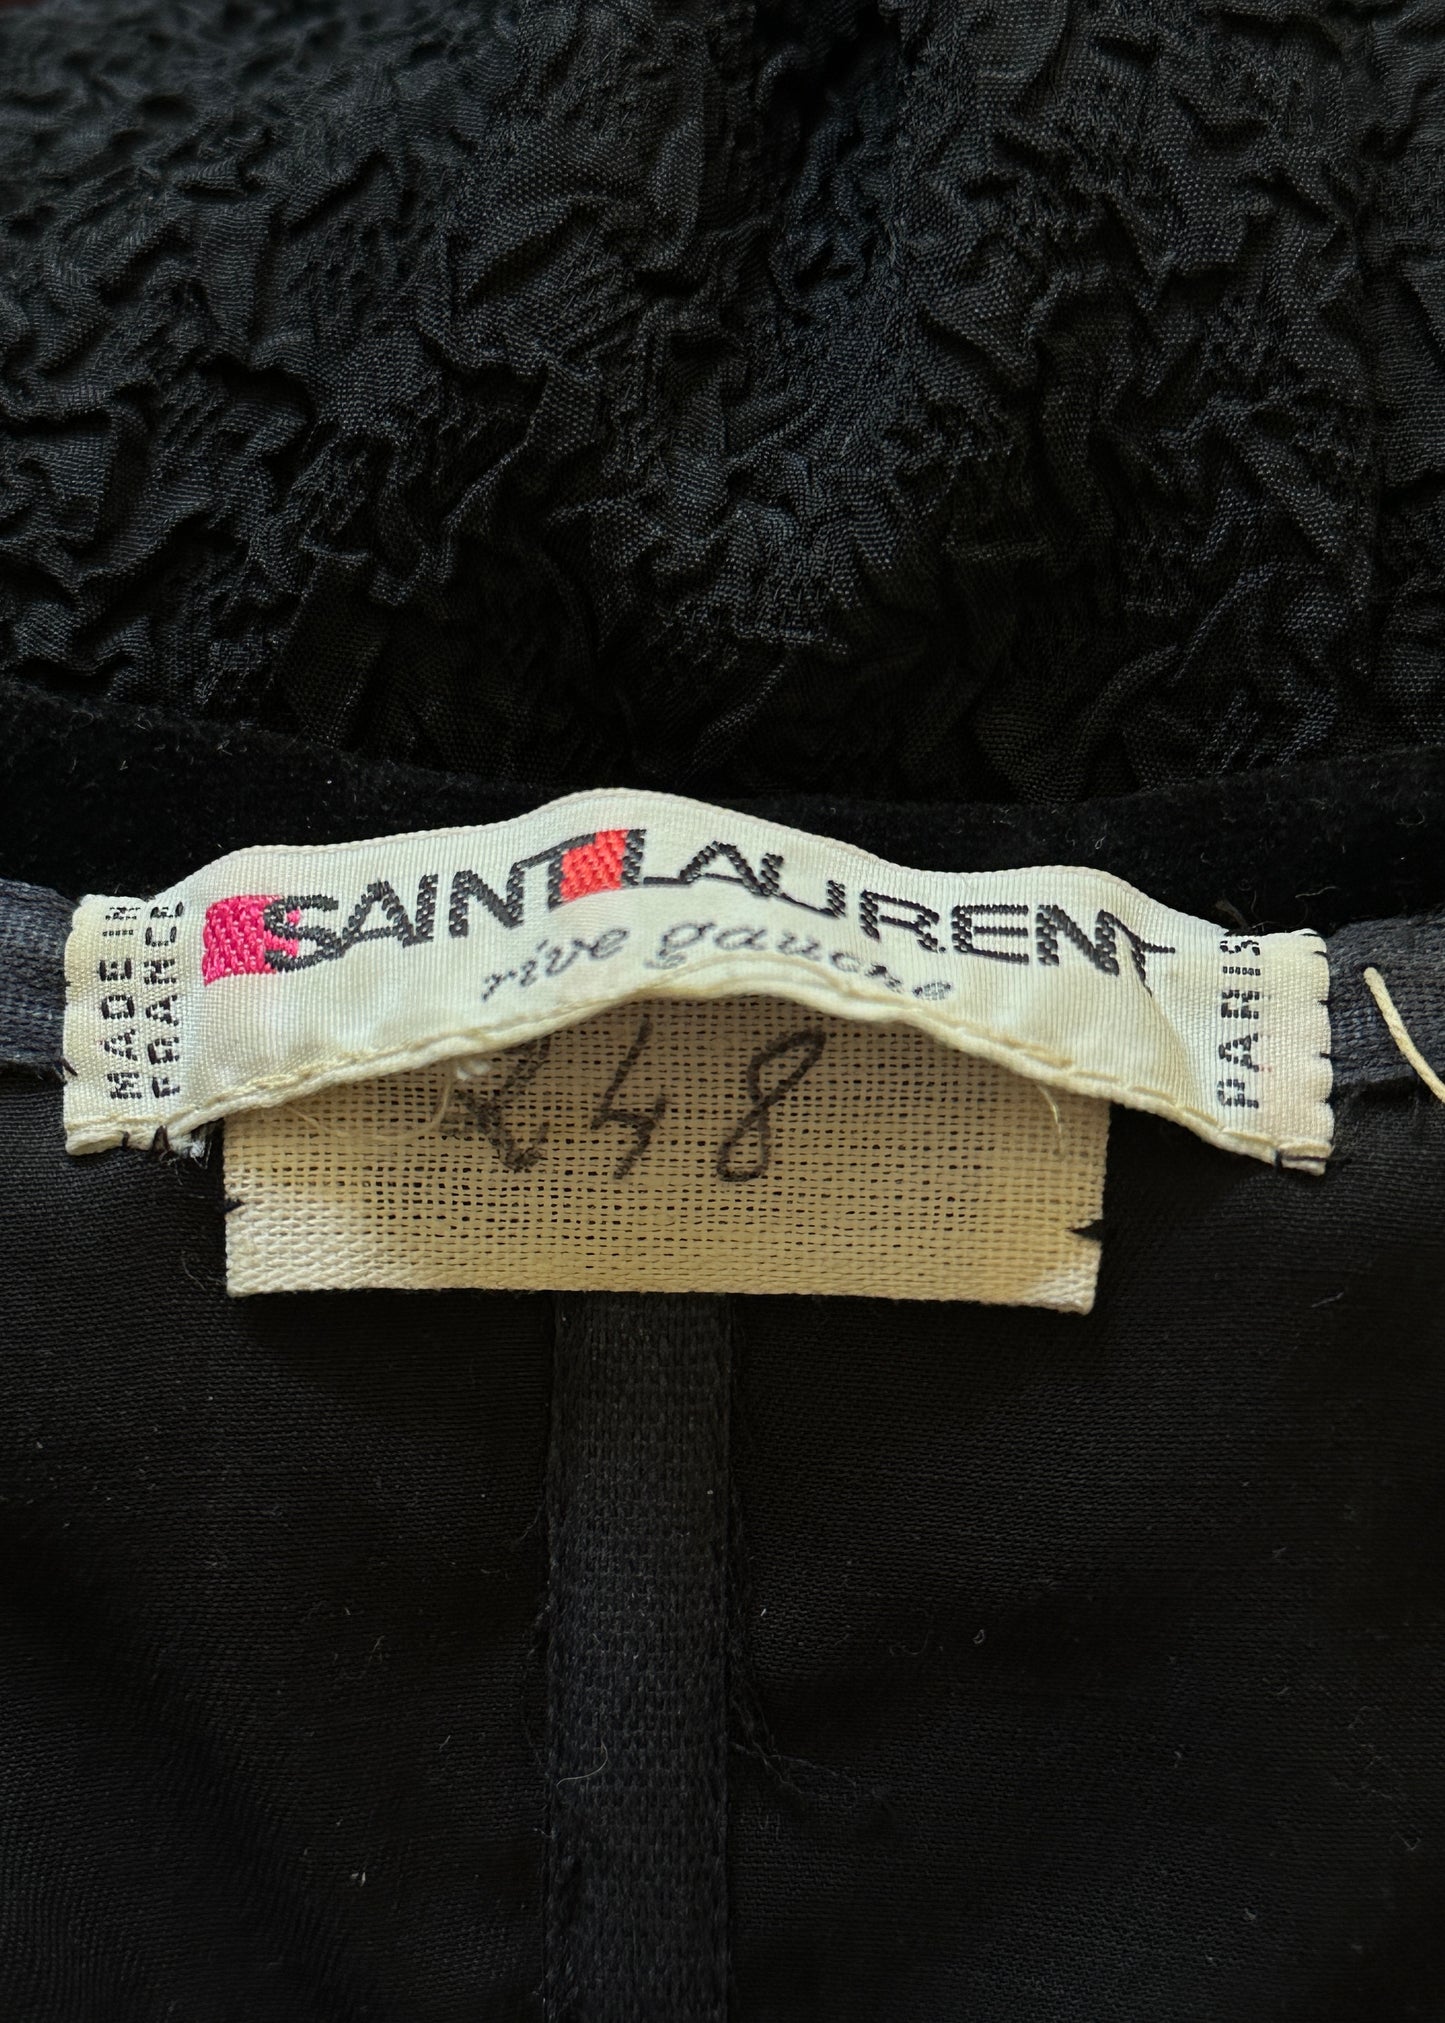 Yves Saint Laurent Spring 1988 Strapless Bow Dress